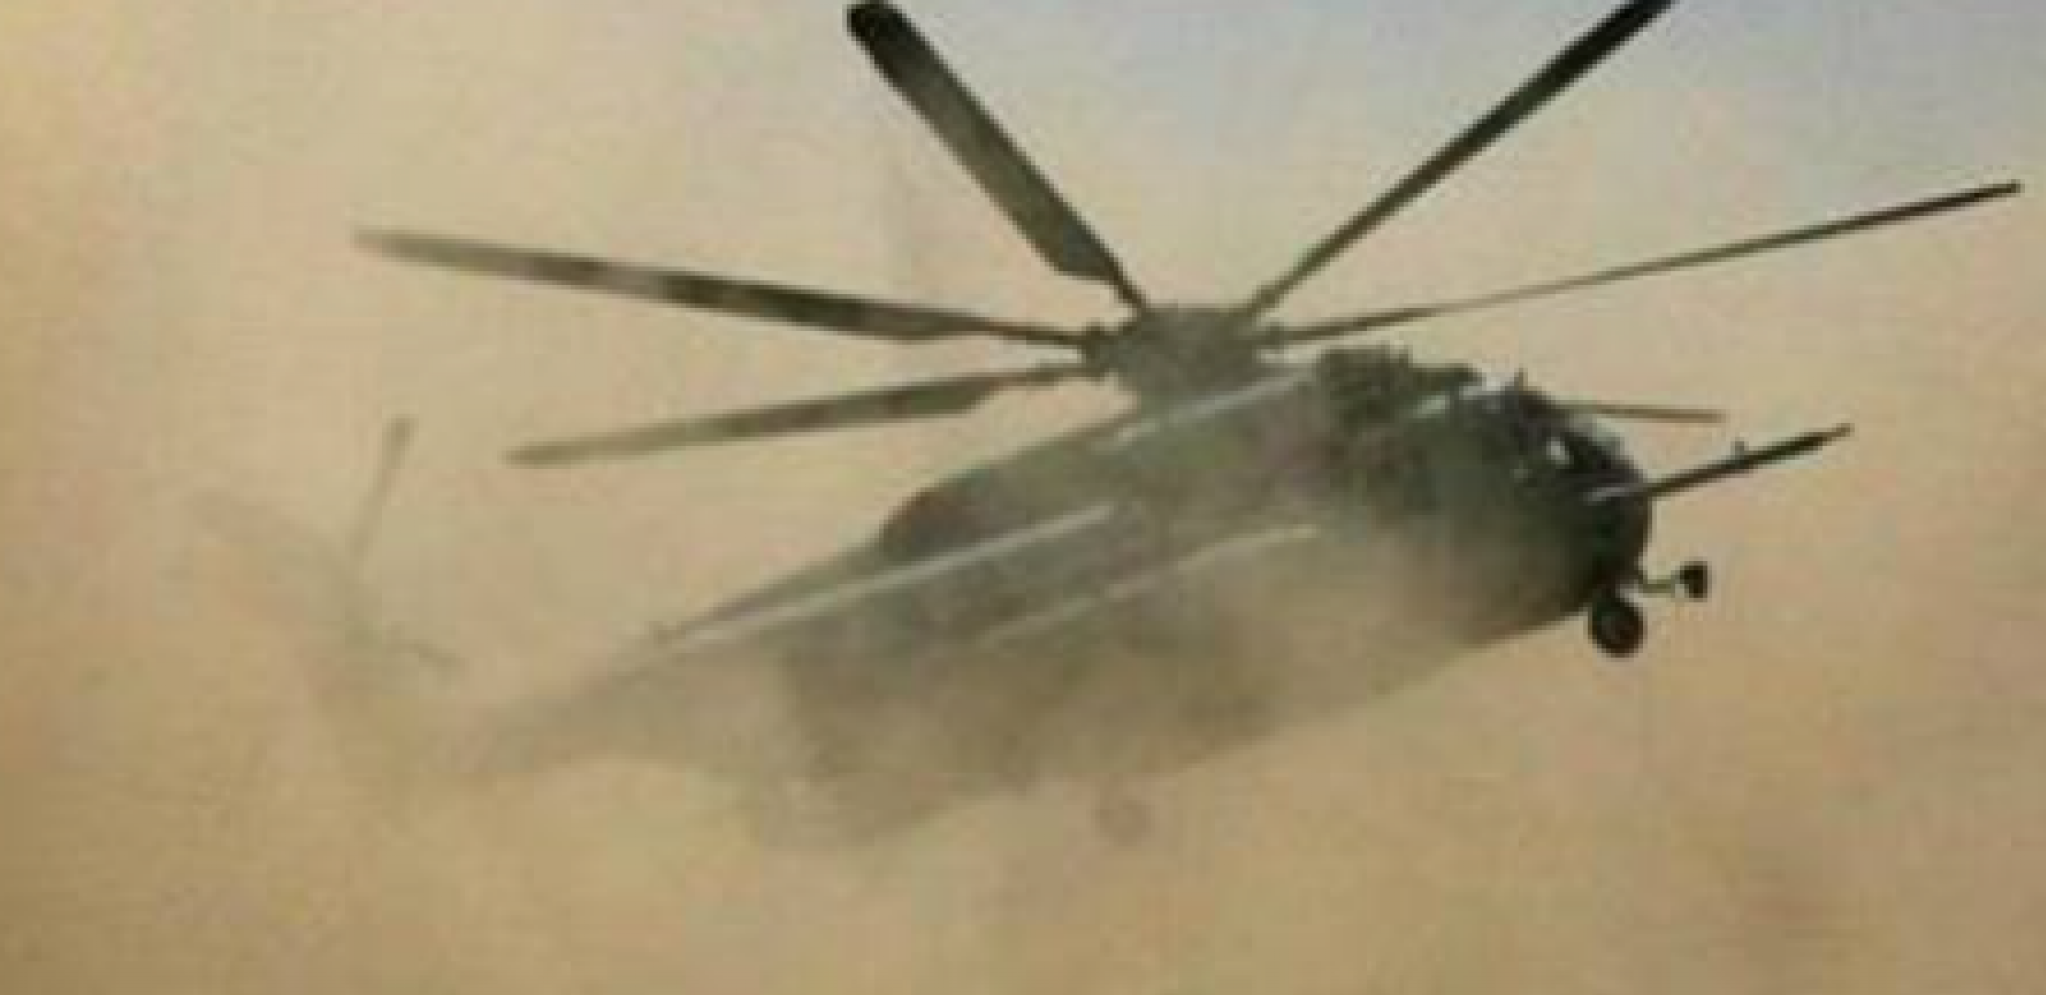 STRAŠNA TRAGEDIJA U INDIJI! Srušio se vojni helikopter, stradalo 13 ljudi